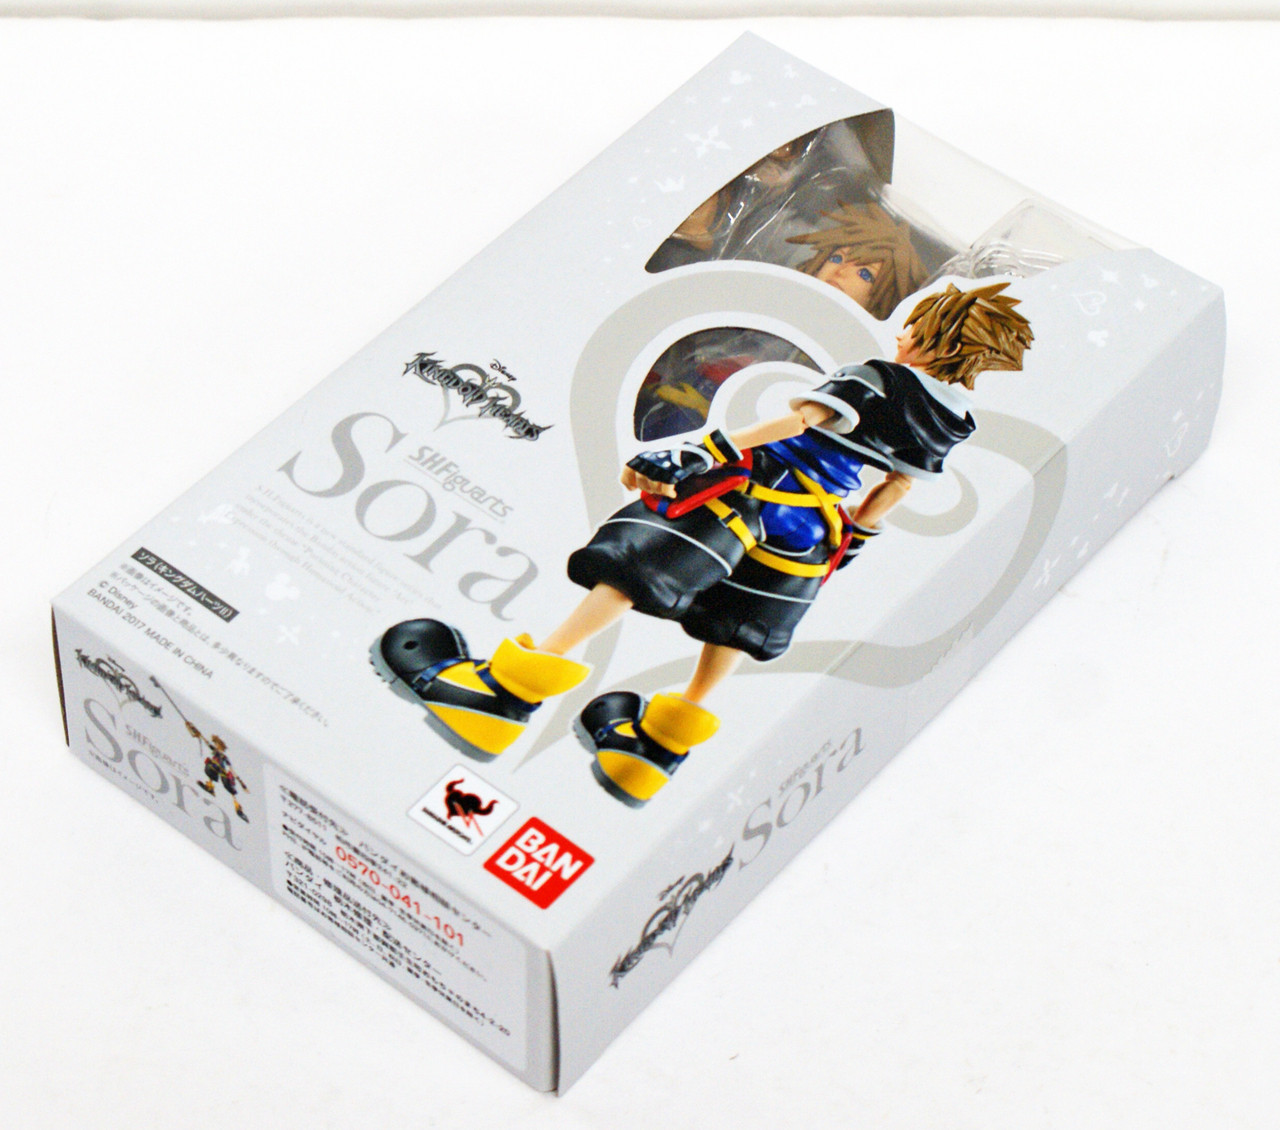 Bandai 161110 S.H. Figuarts Kingdom Hearts II Sora Action Figure